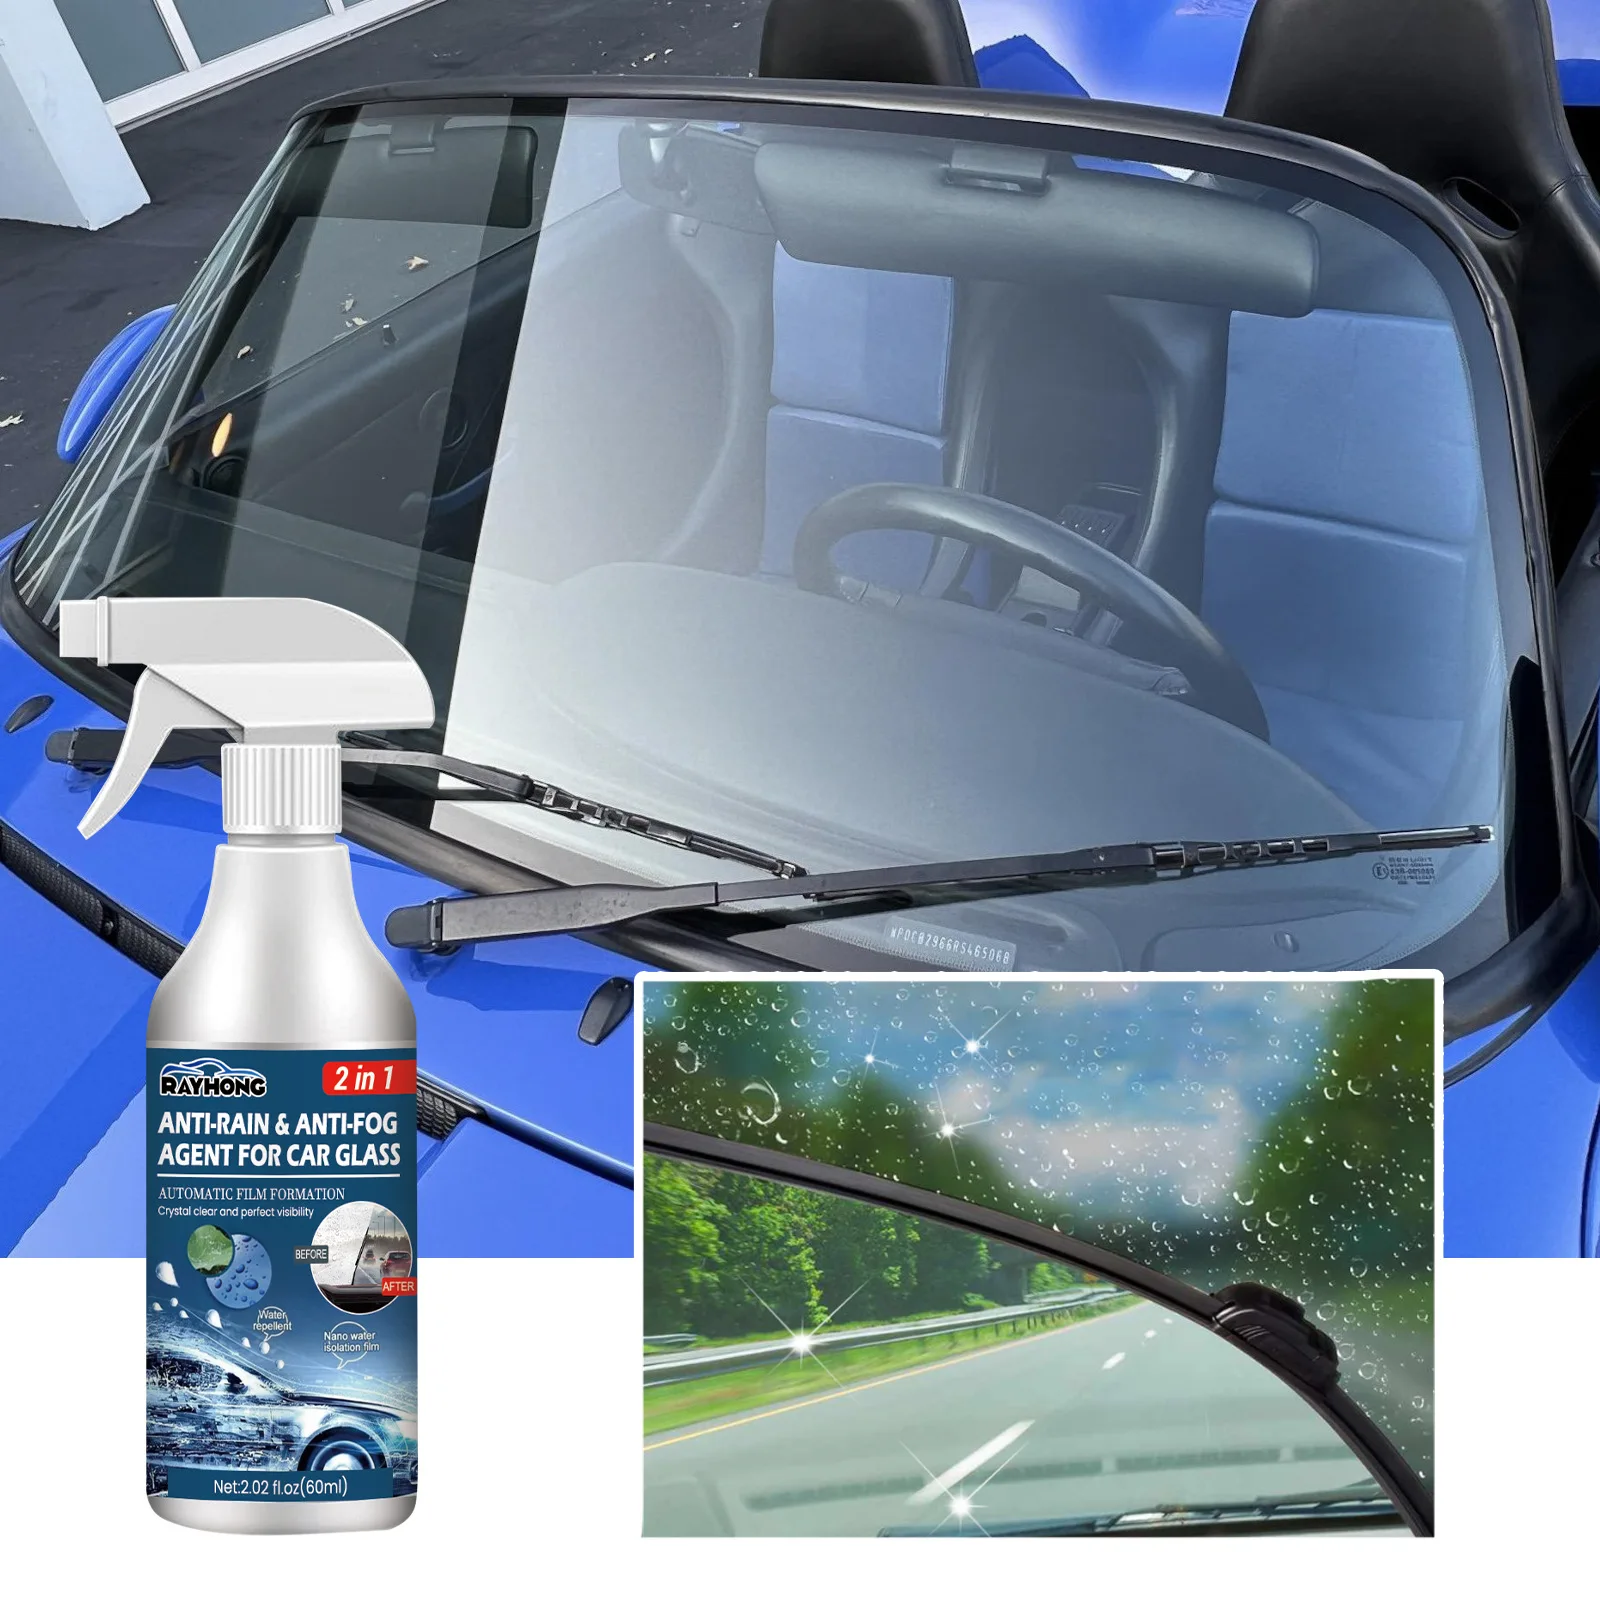 

Водоотталкивающий спрей с покрытием от дождя для автомобильного стекла гидрофобная защита от дождя Автомобильная жидкость для лобового стекла зеркальная маска для авто полировка 60 мл